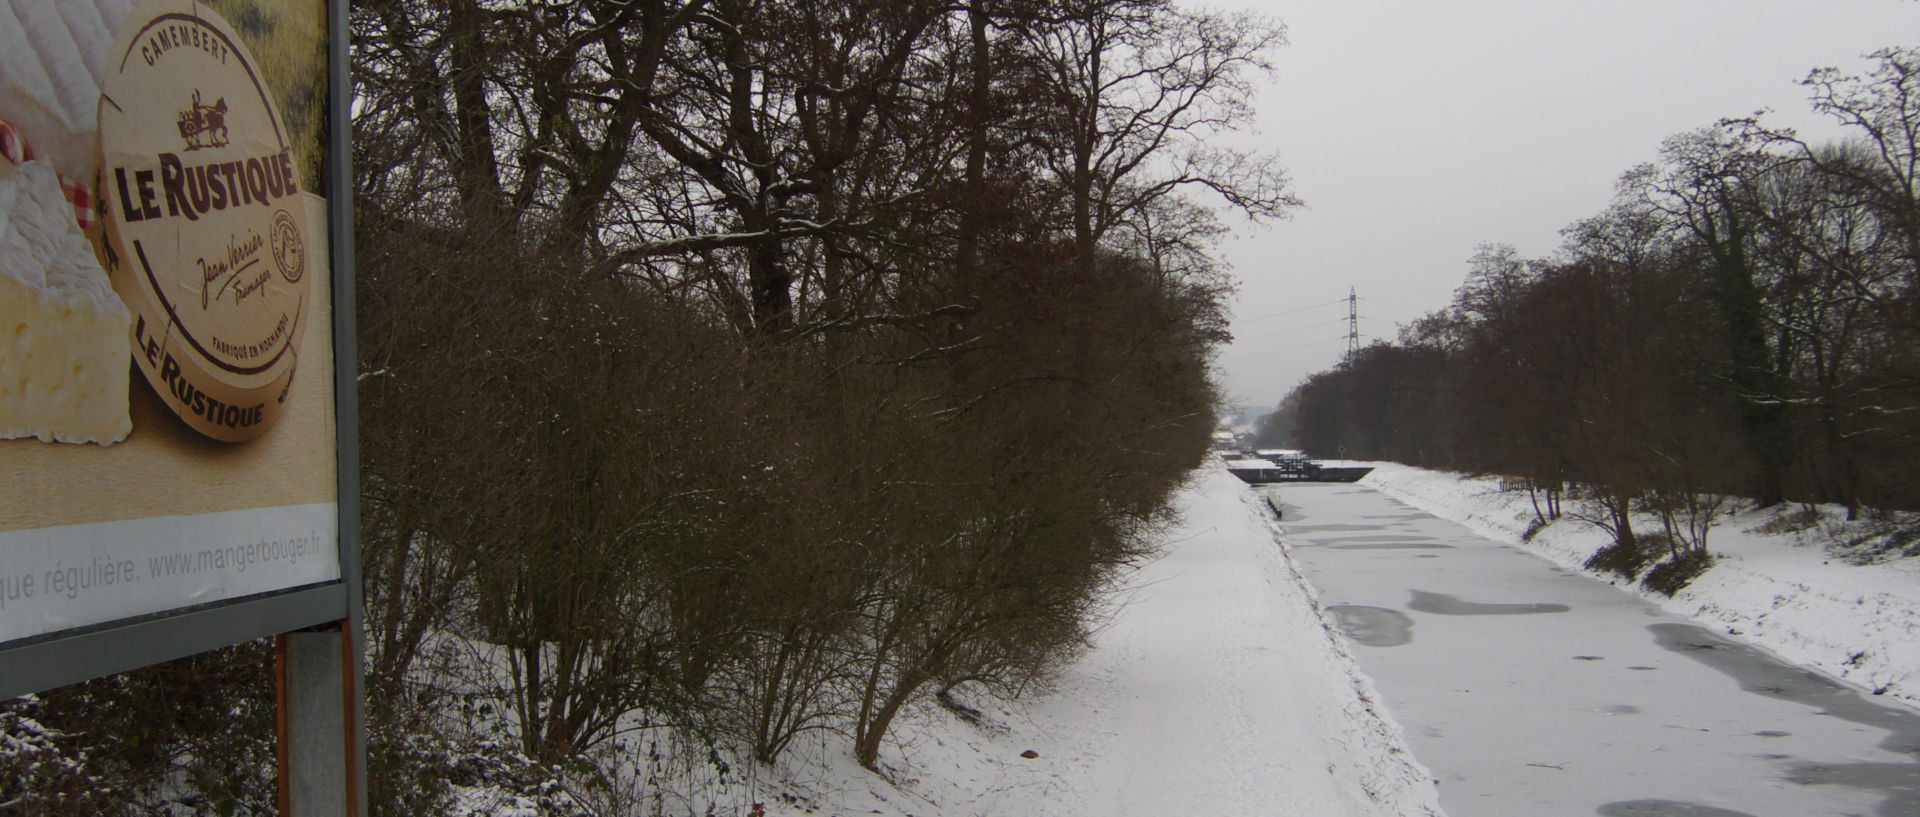 Photo du canal de Roubaix sous la neige, Wasquehal.